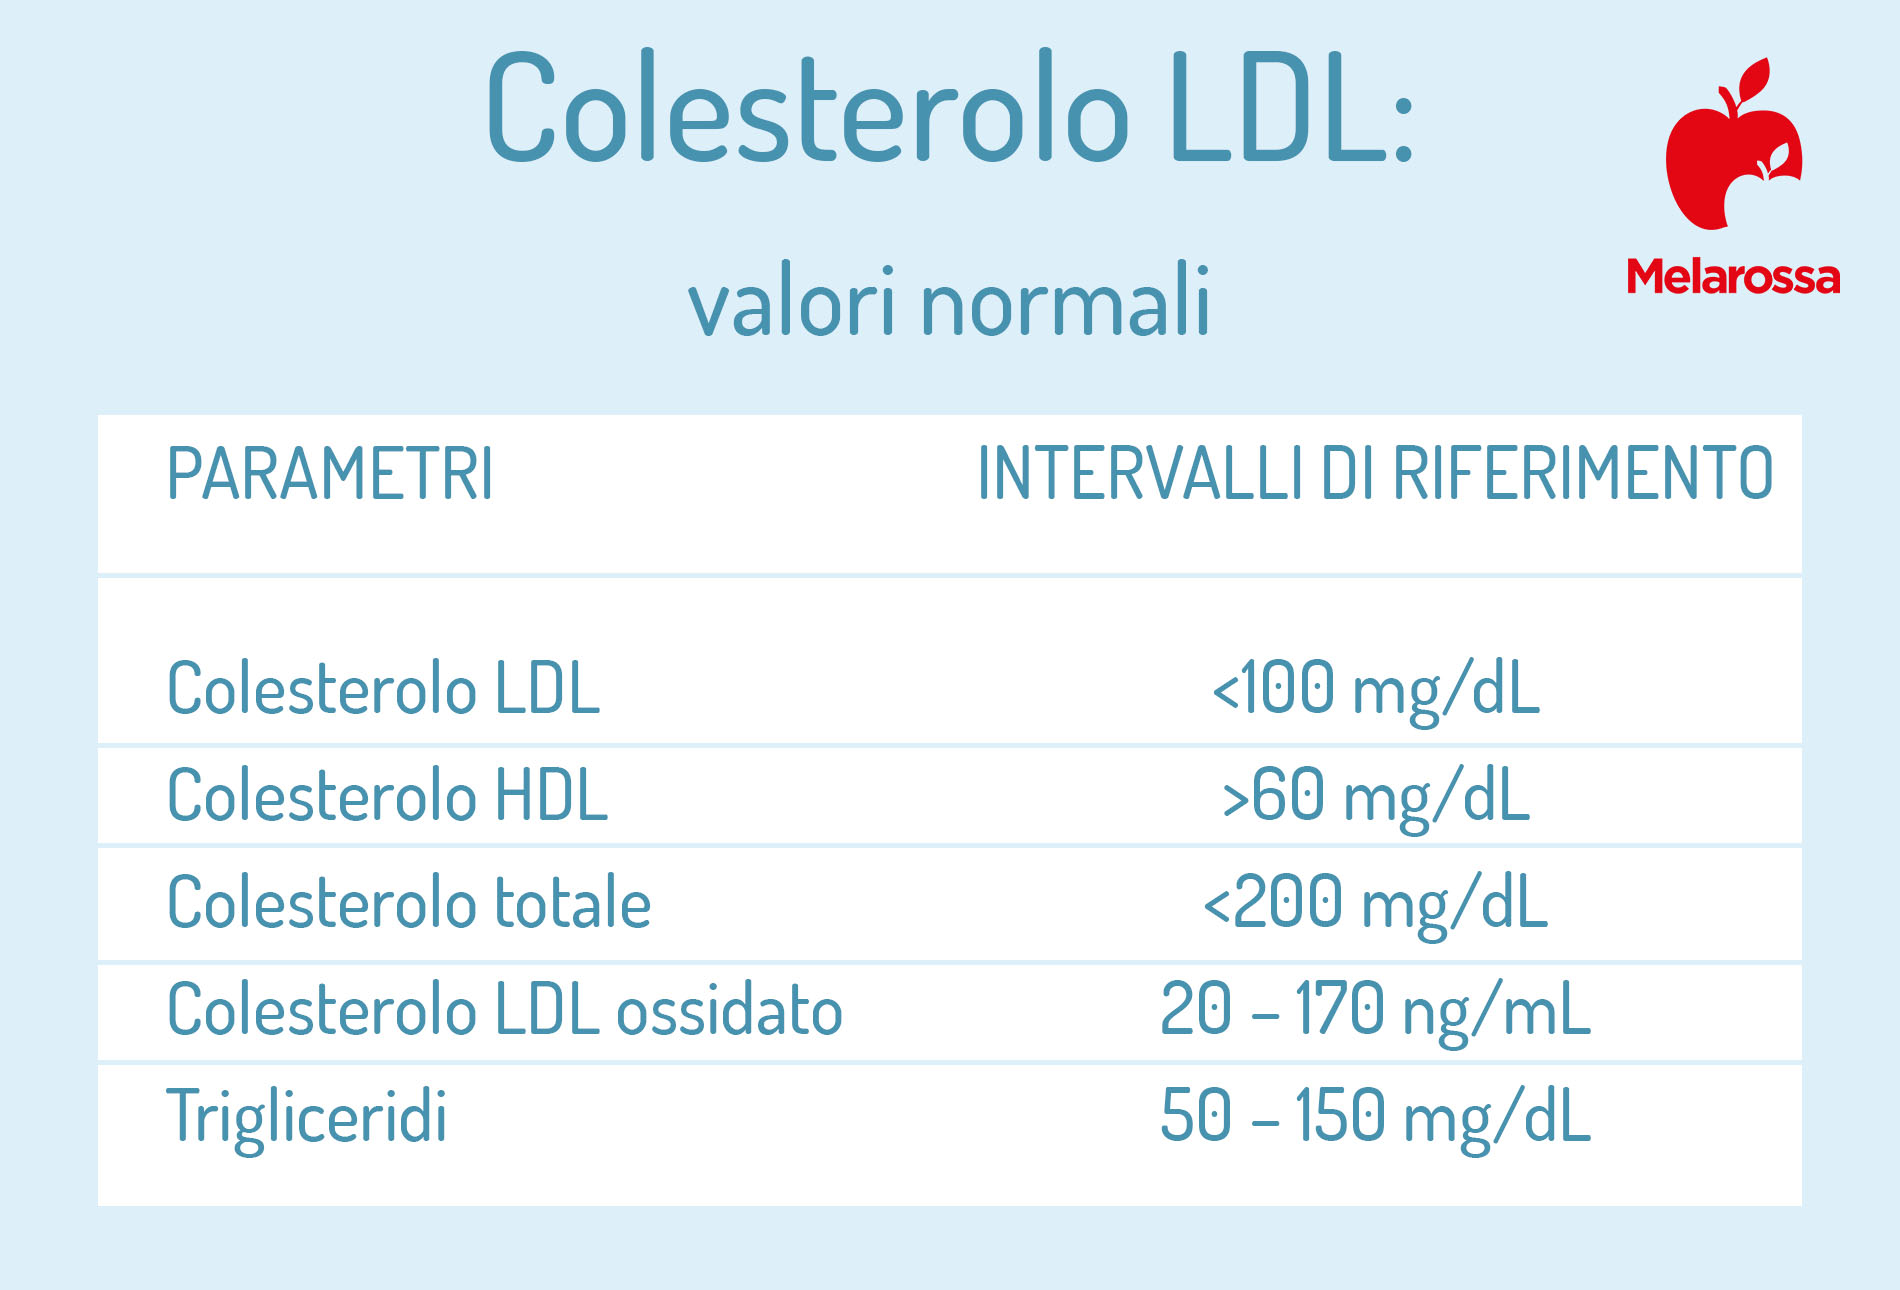 colesterolo ldl valori normali